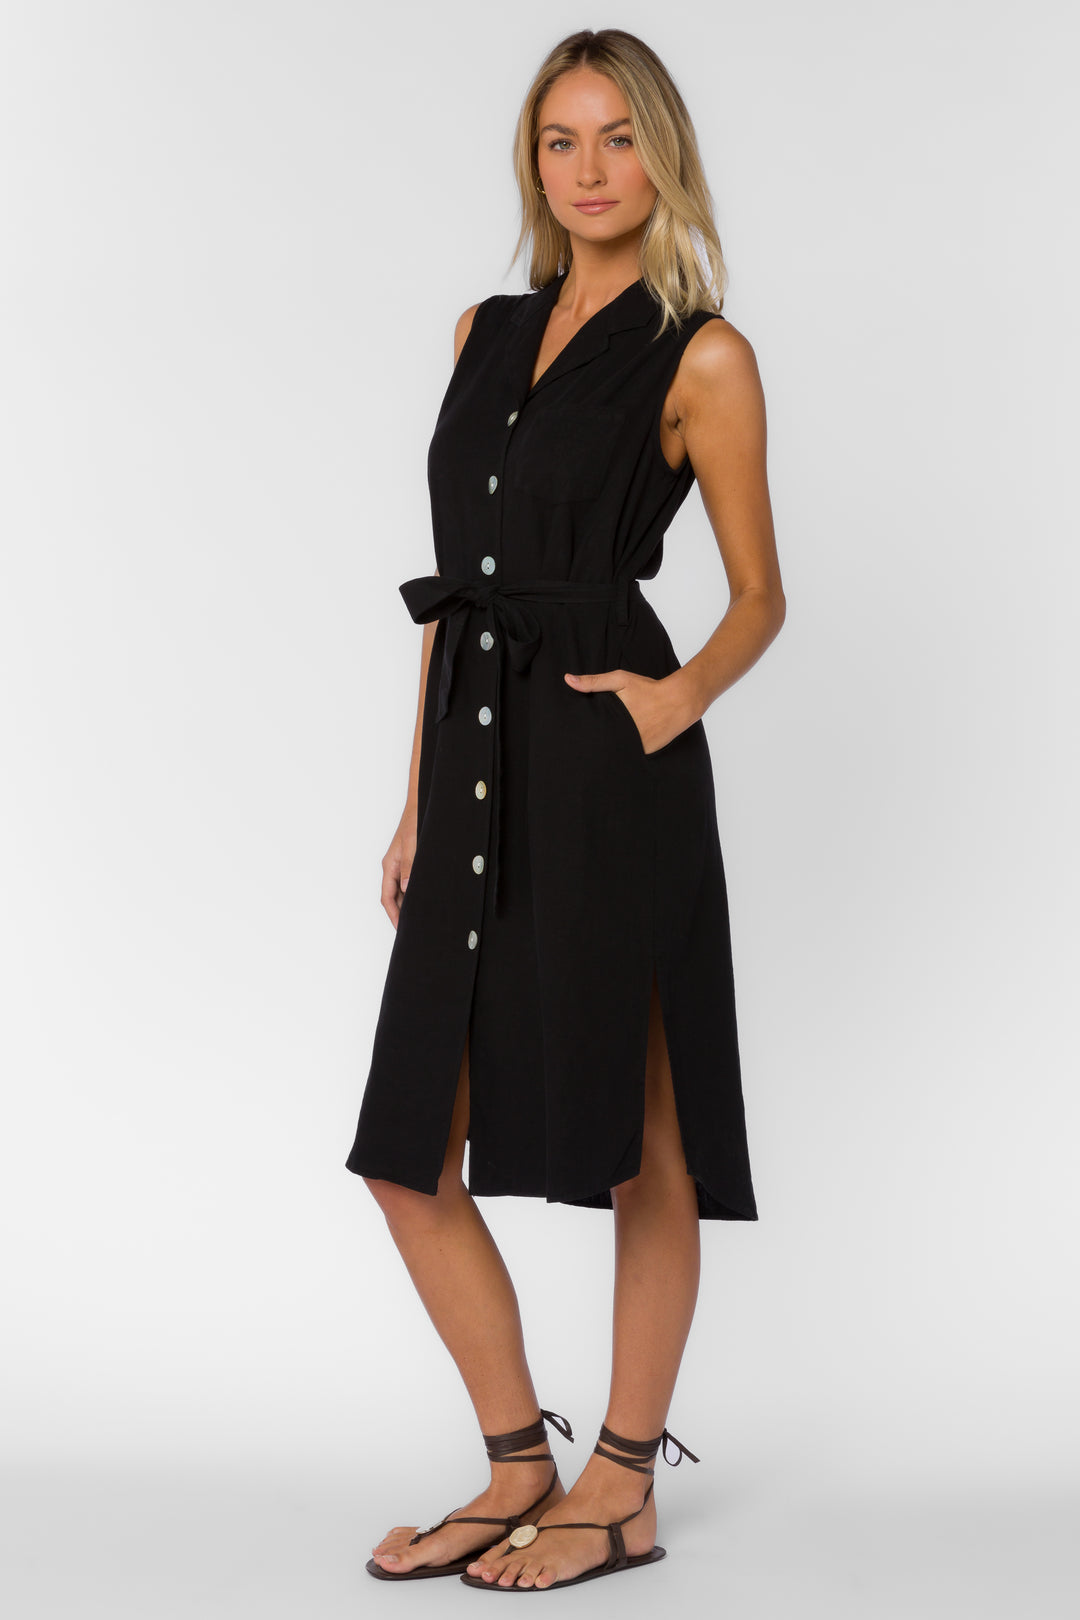 Batina Black Dress - Dresses - Velvet Heart Clothing